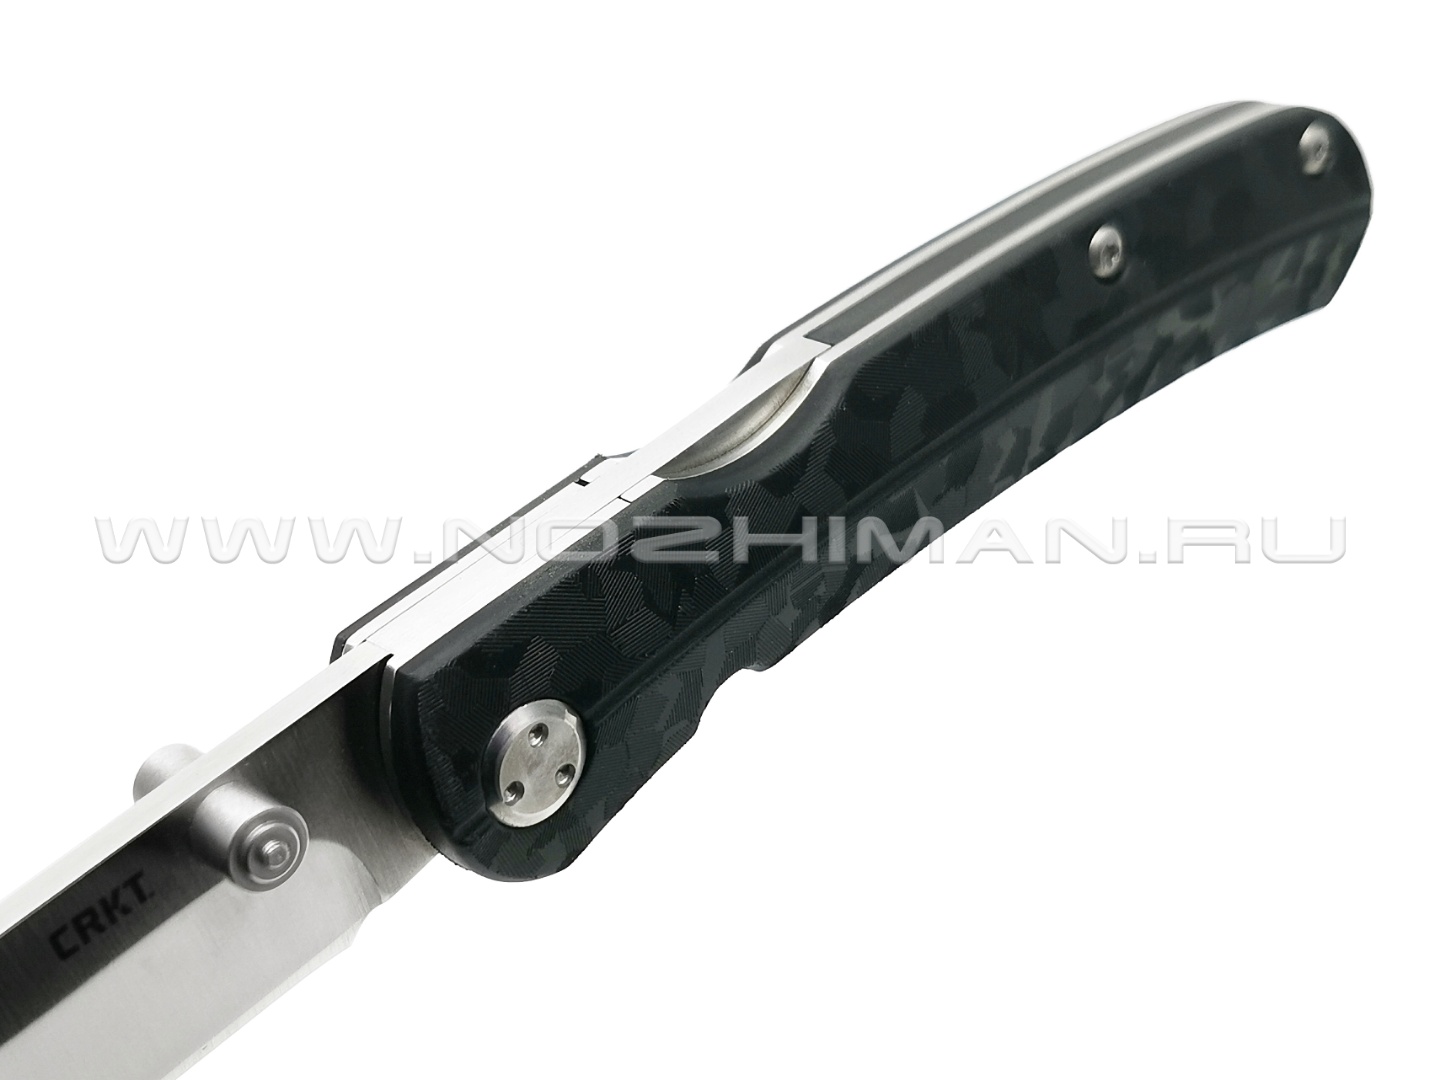 Нож CRKT Kith Black 6433 сталь 8Cr13MoV рукоять Glass Reinforced Nylon